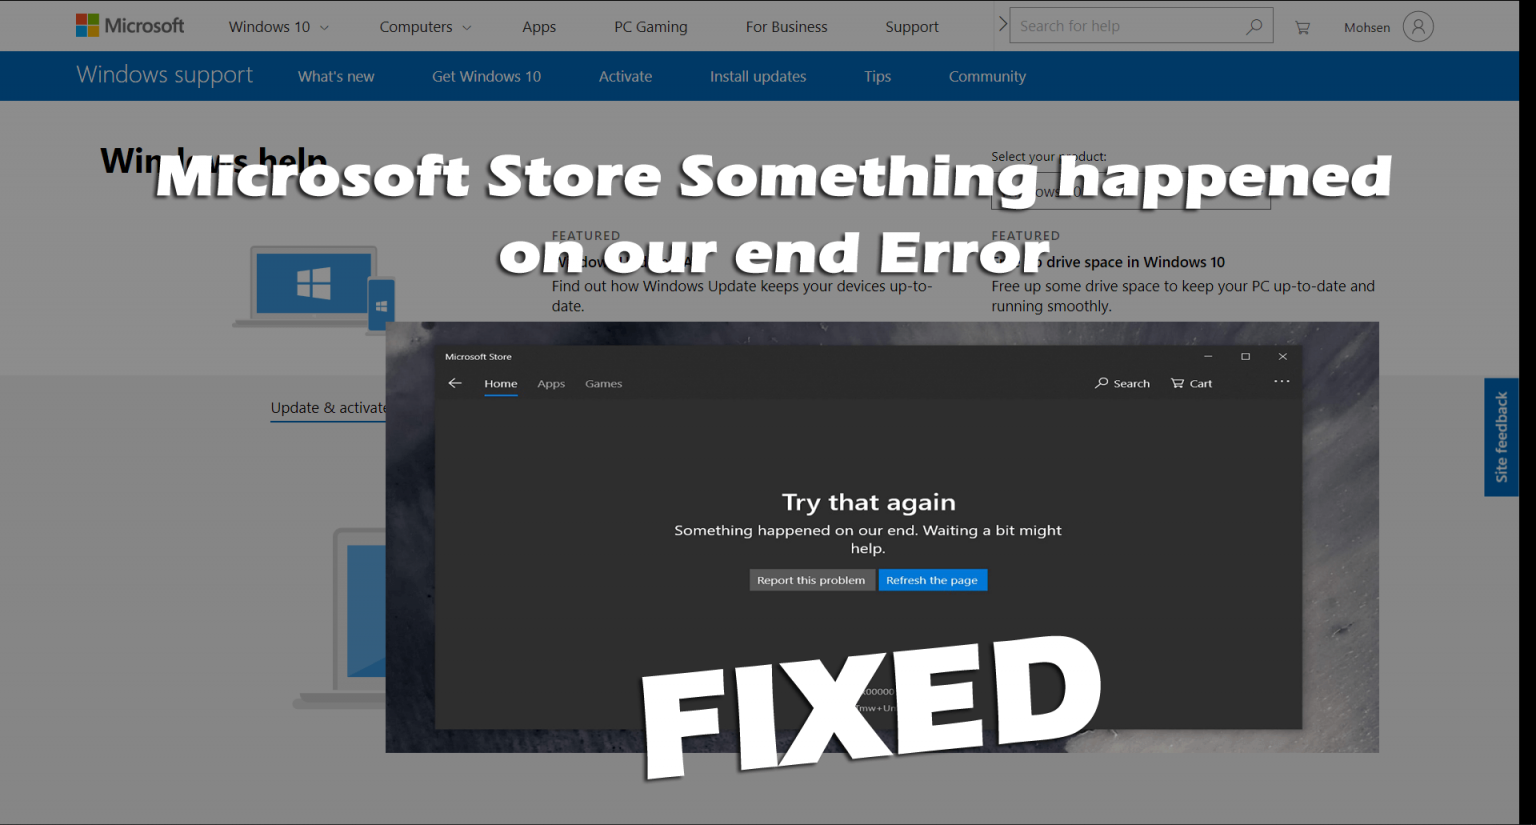 Microsoft Store: è successo qualcosa sul nostro Fine errore